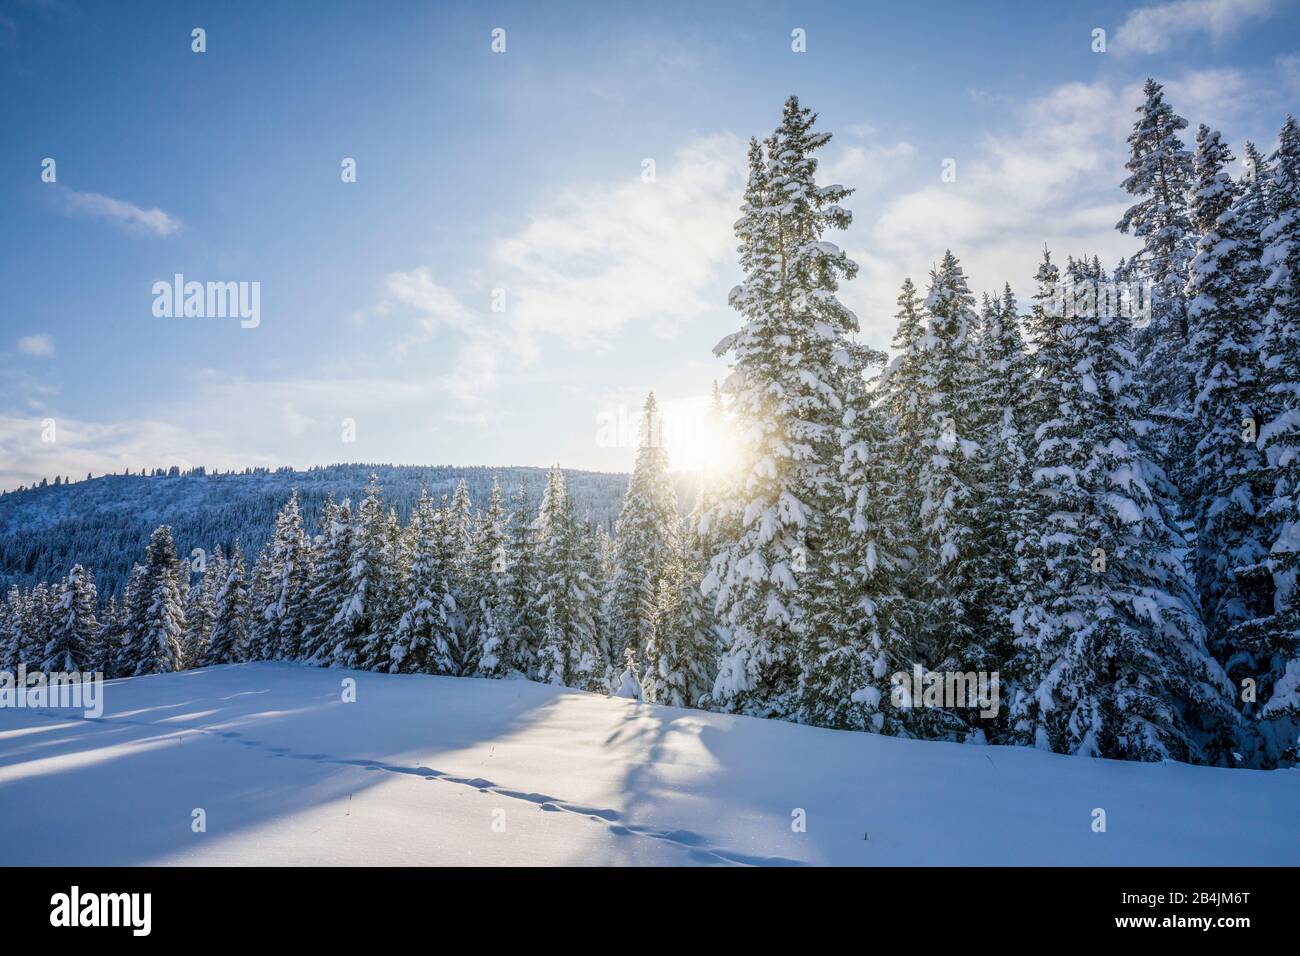 coniferous forest, sunlight filters through the snow-covered trees, Livinallongo del Col di Lana, Belluno, Veneto, Italy Stock Photo